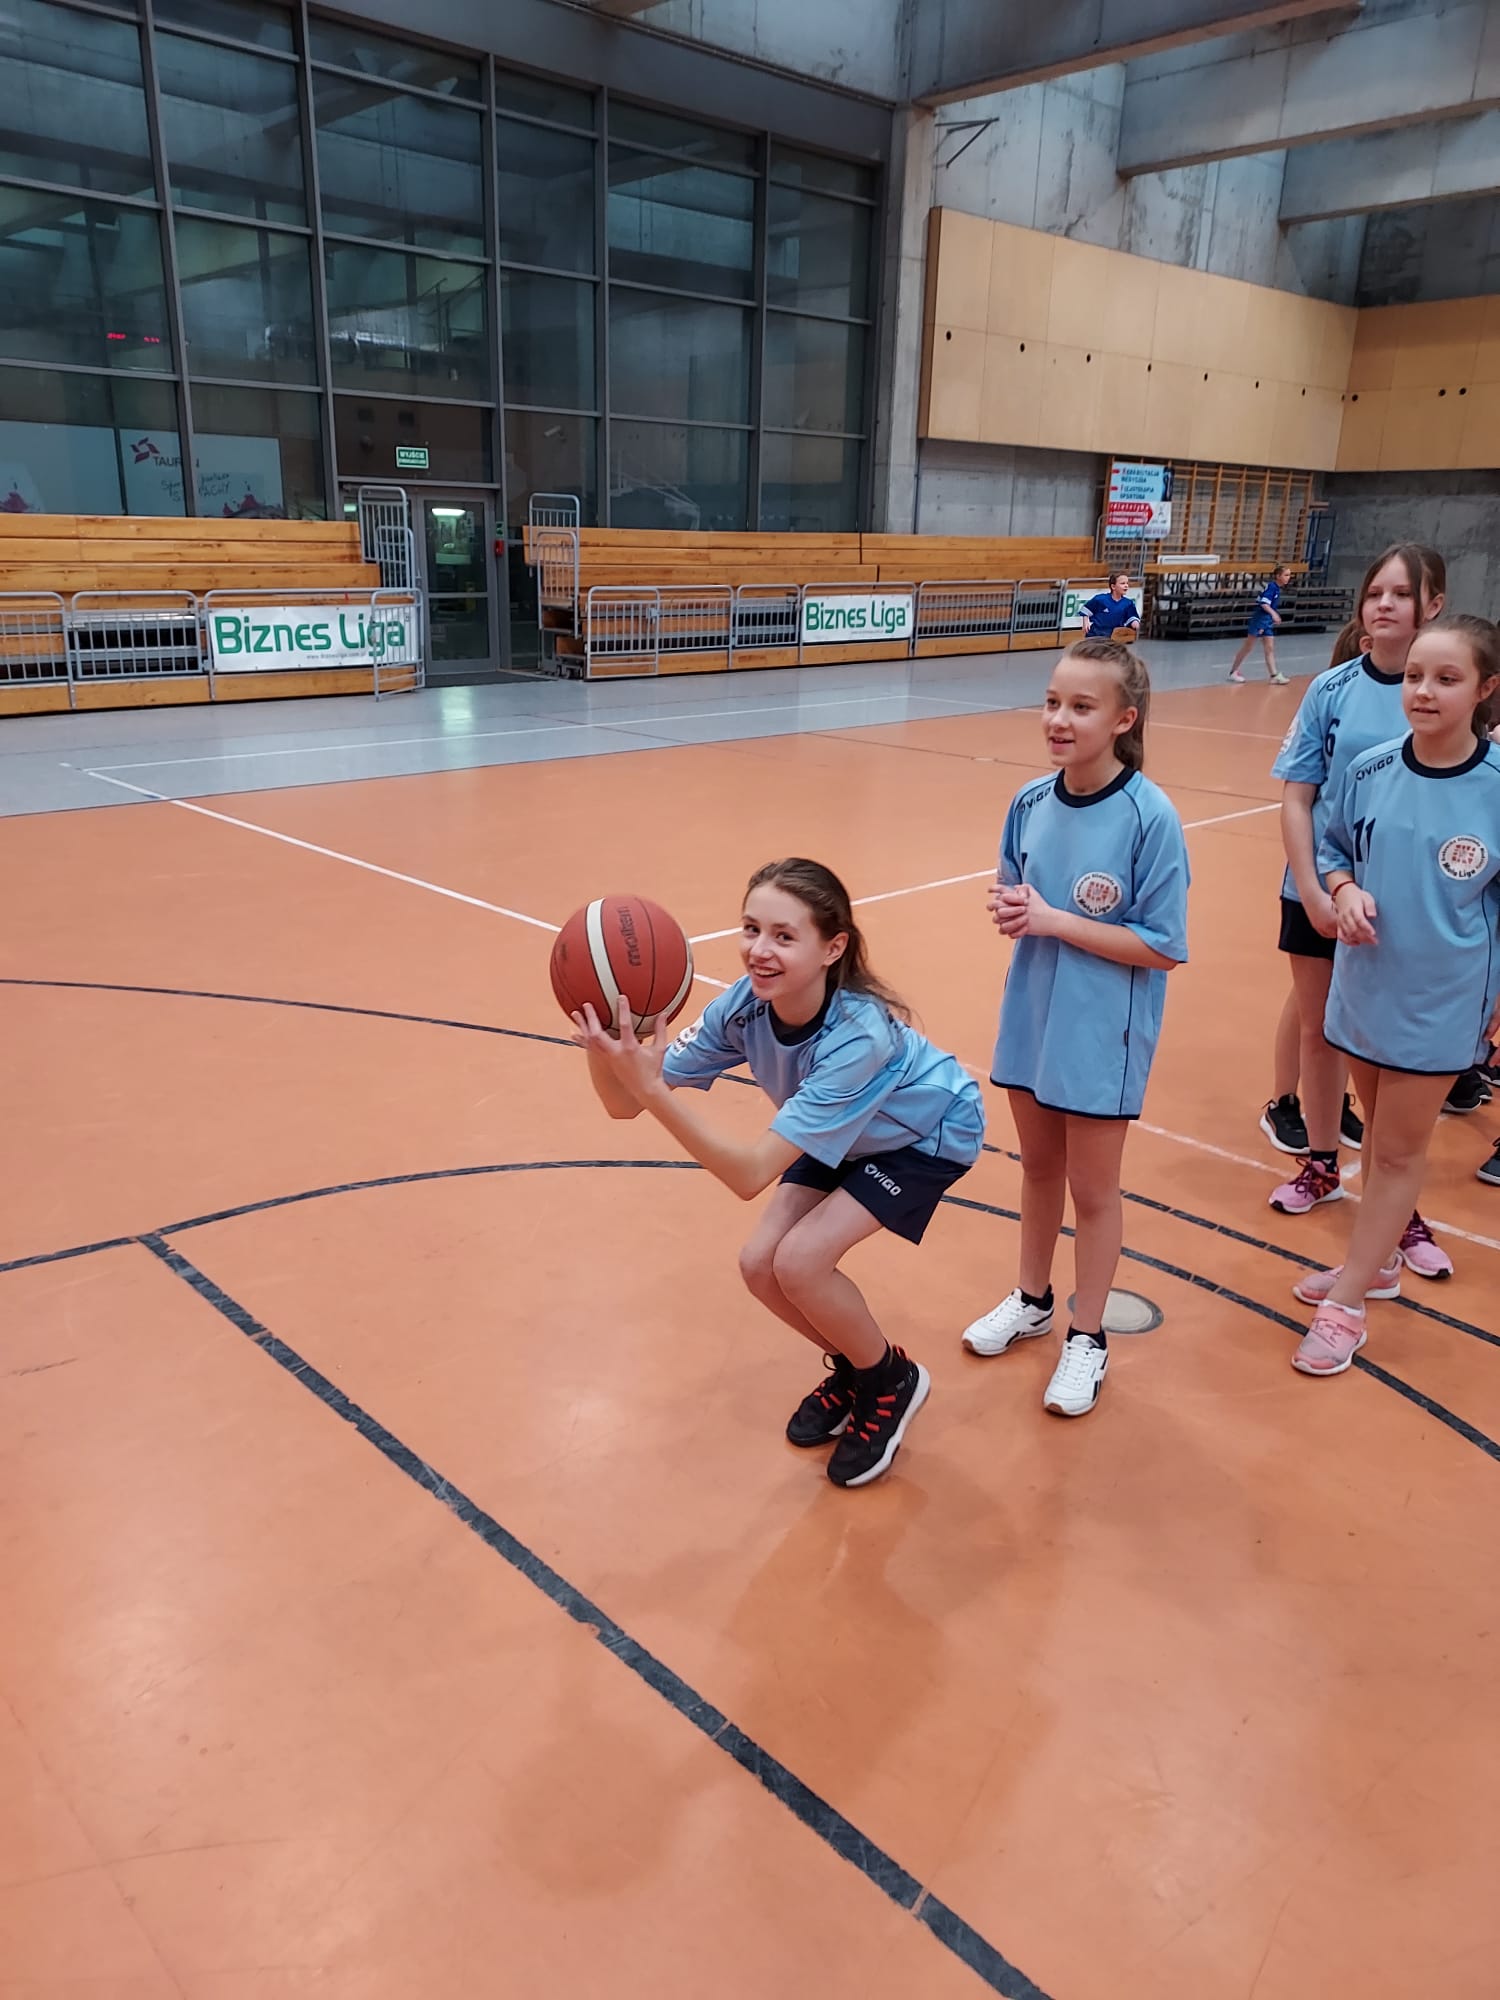 Mistrzostwo Krakowa w koszykówce dziewcząt